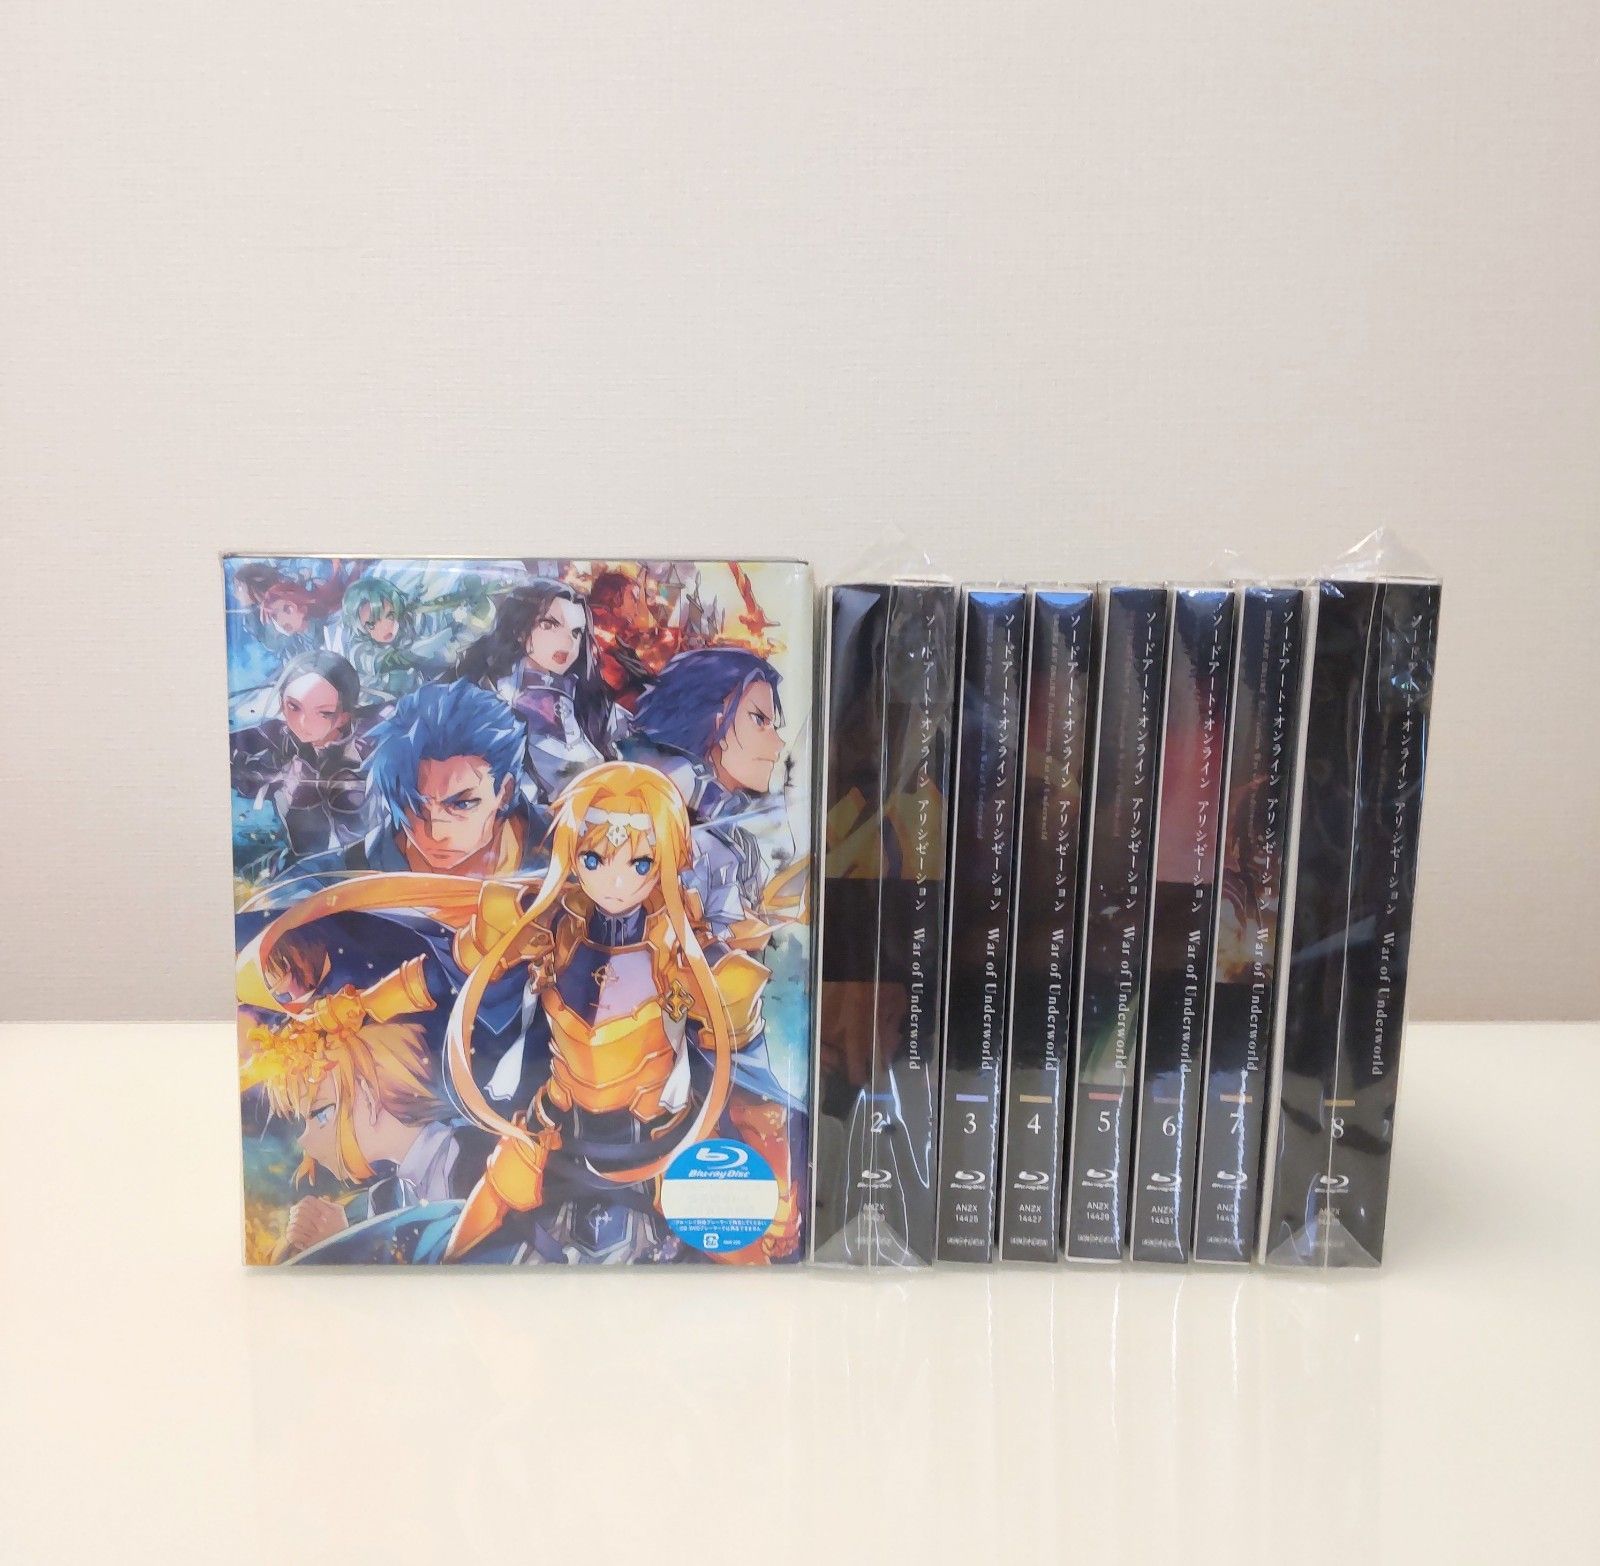 お得高評価Blu-ray ソードアート・オンライン アリシゼーション 全8巻セット アニメ